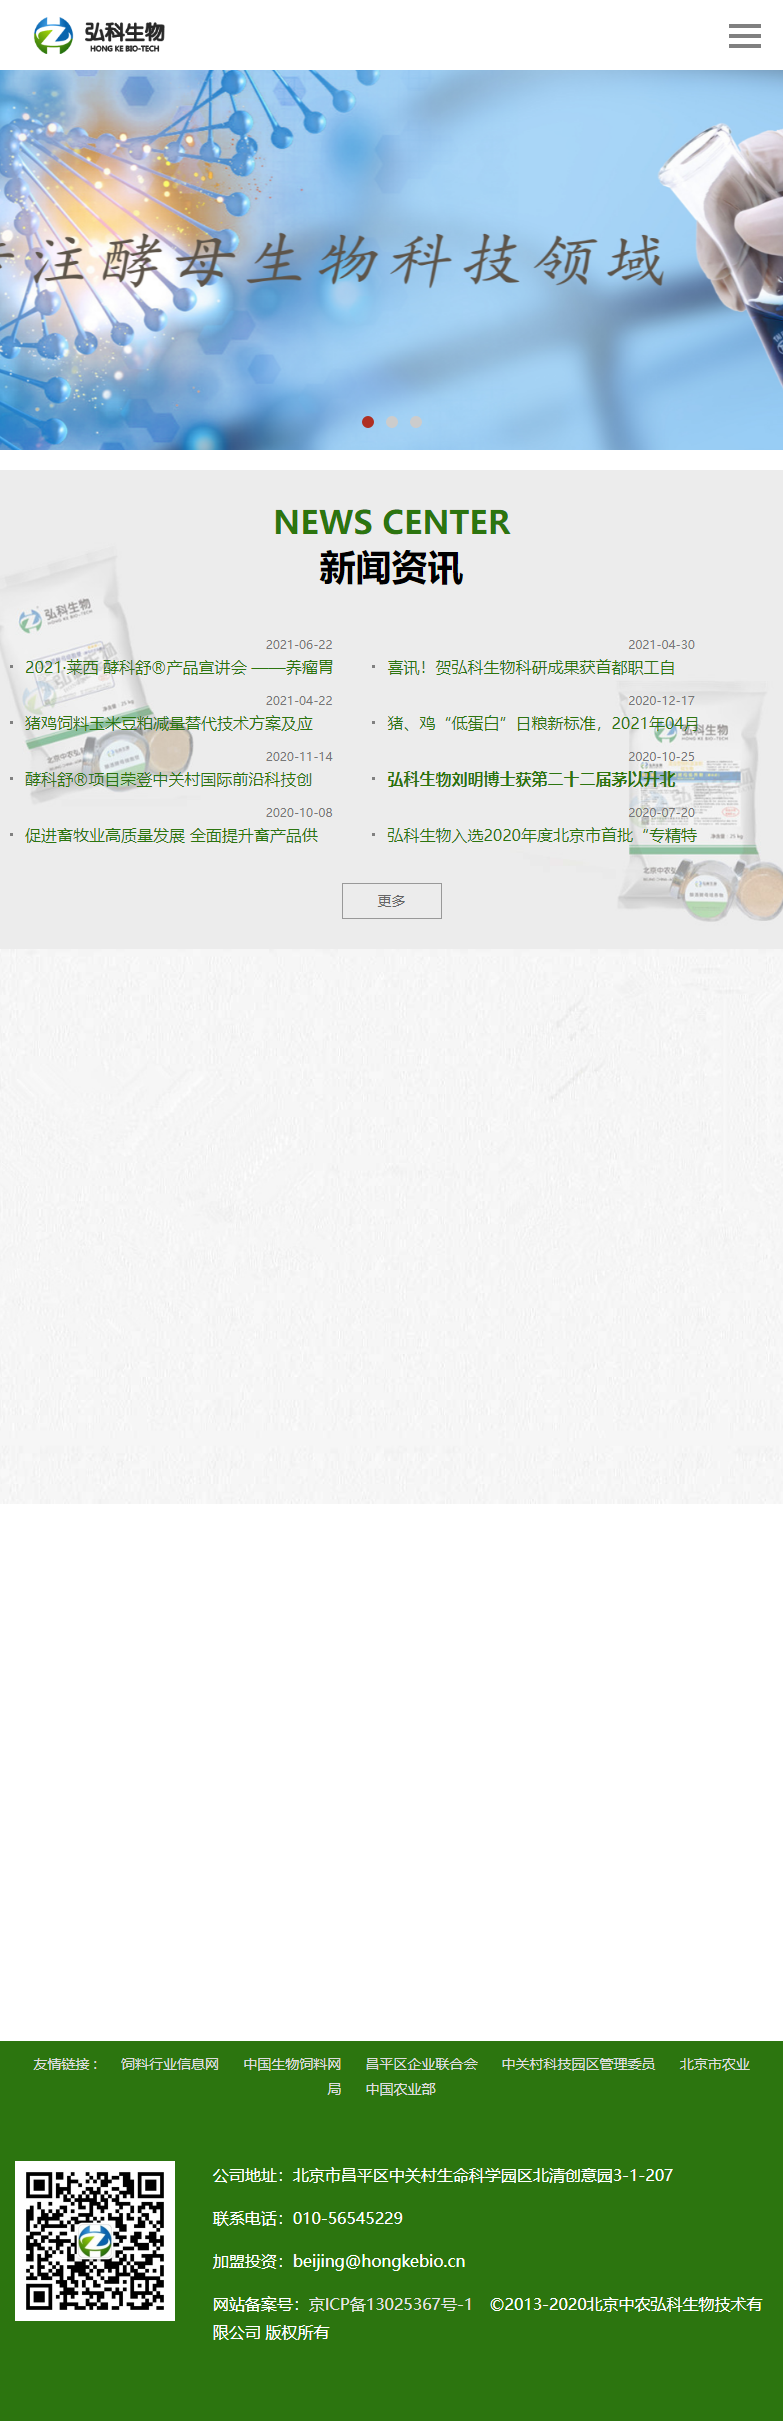 北京中农弘科生物技术有限公司网站案例